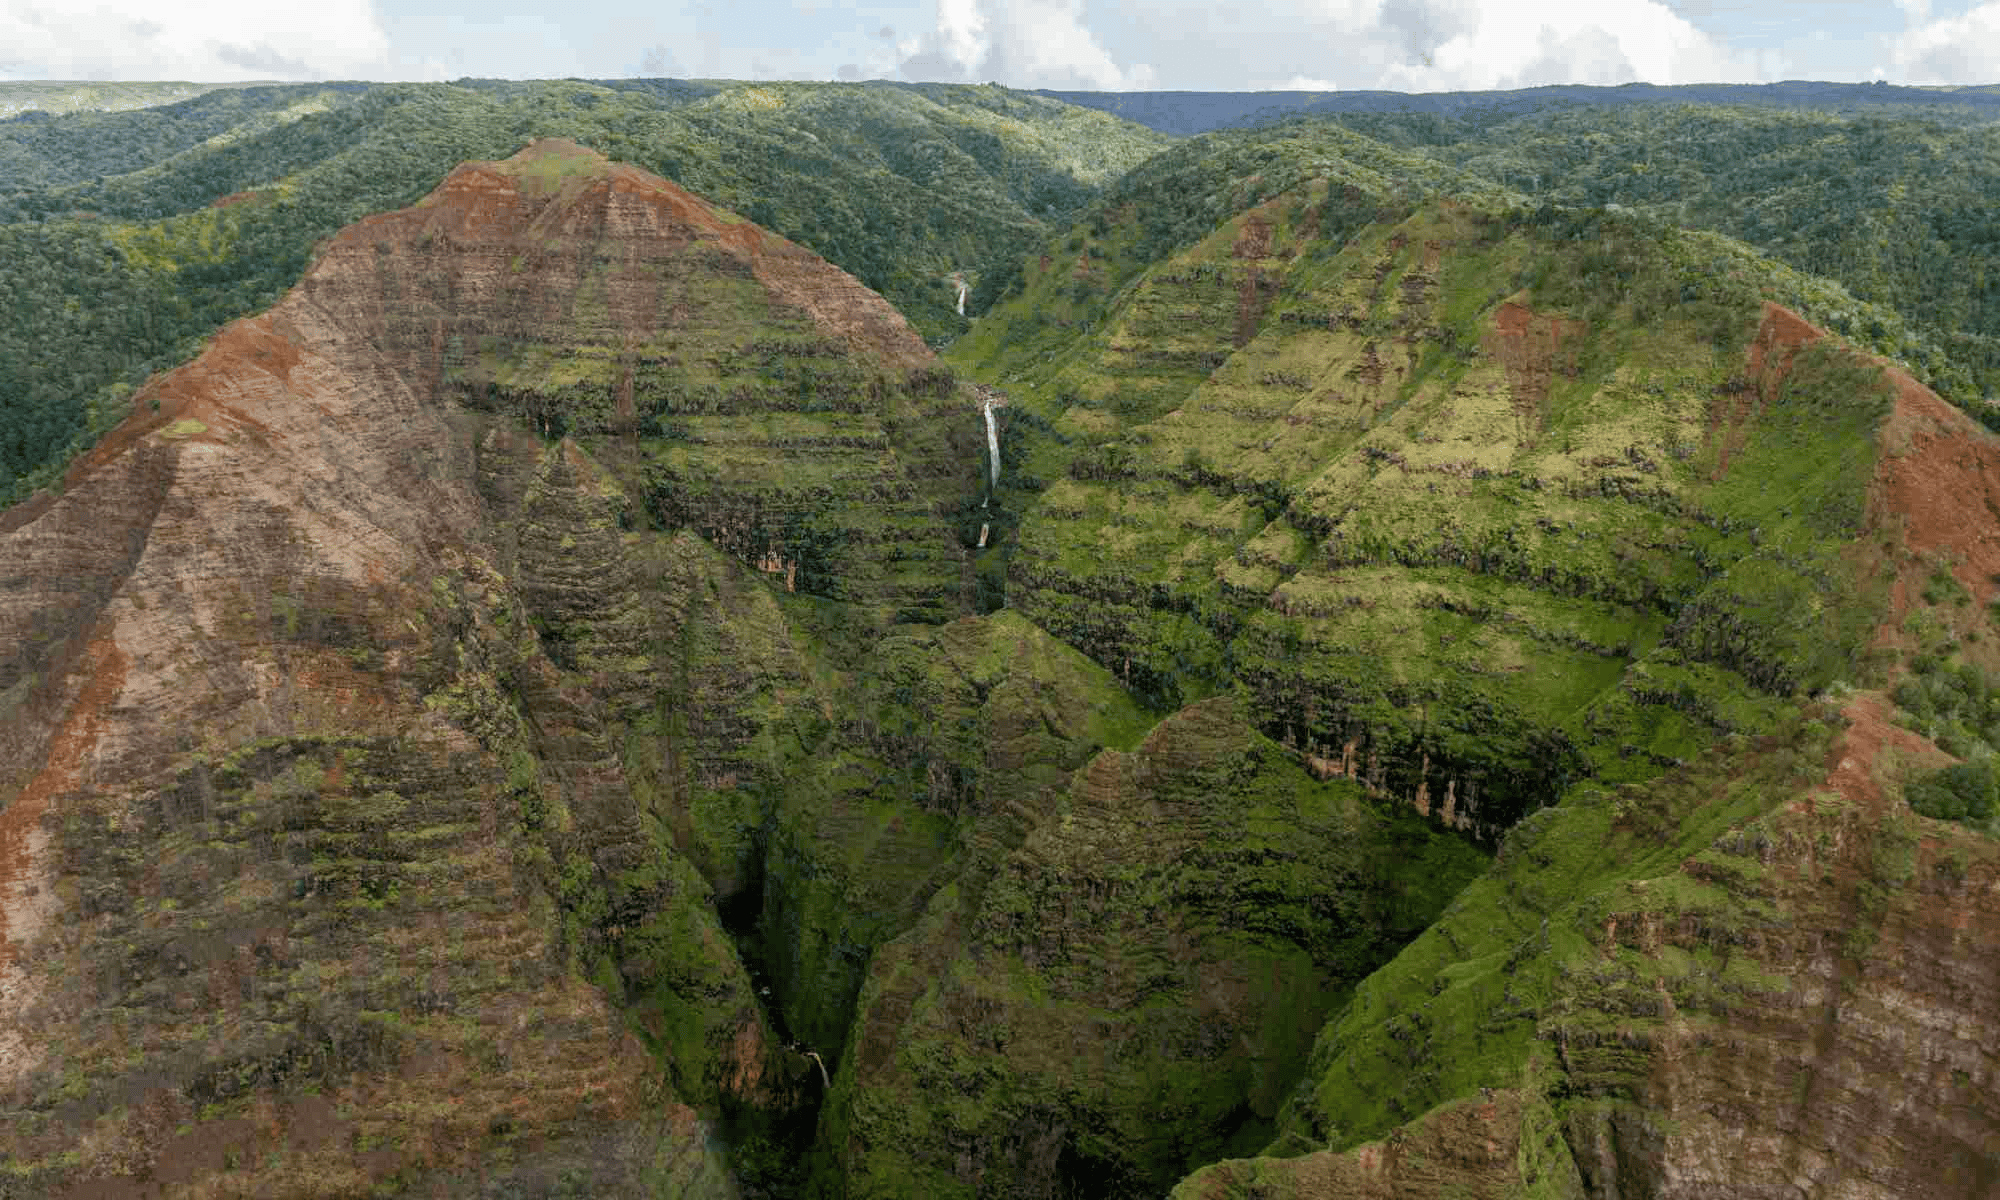 Waimea valley in Oahu